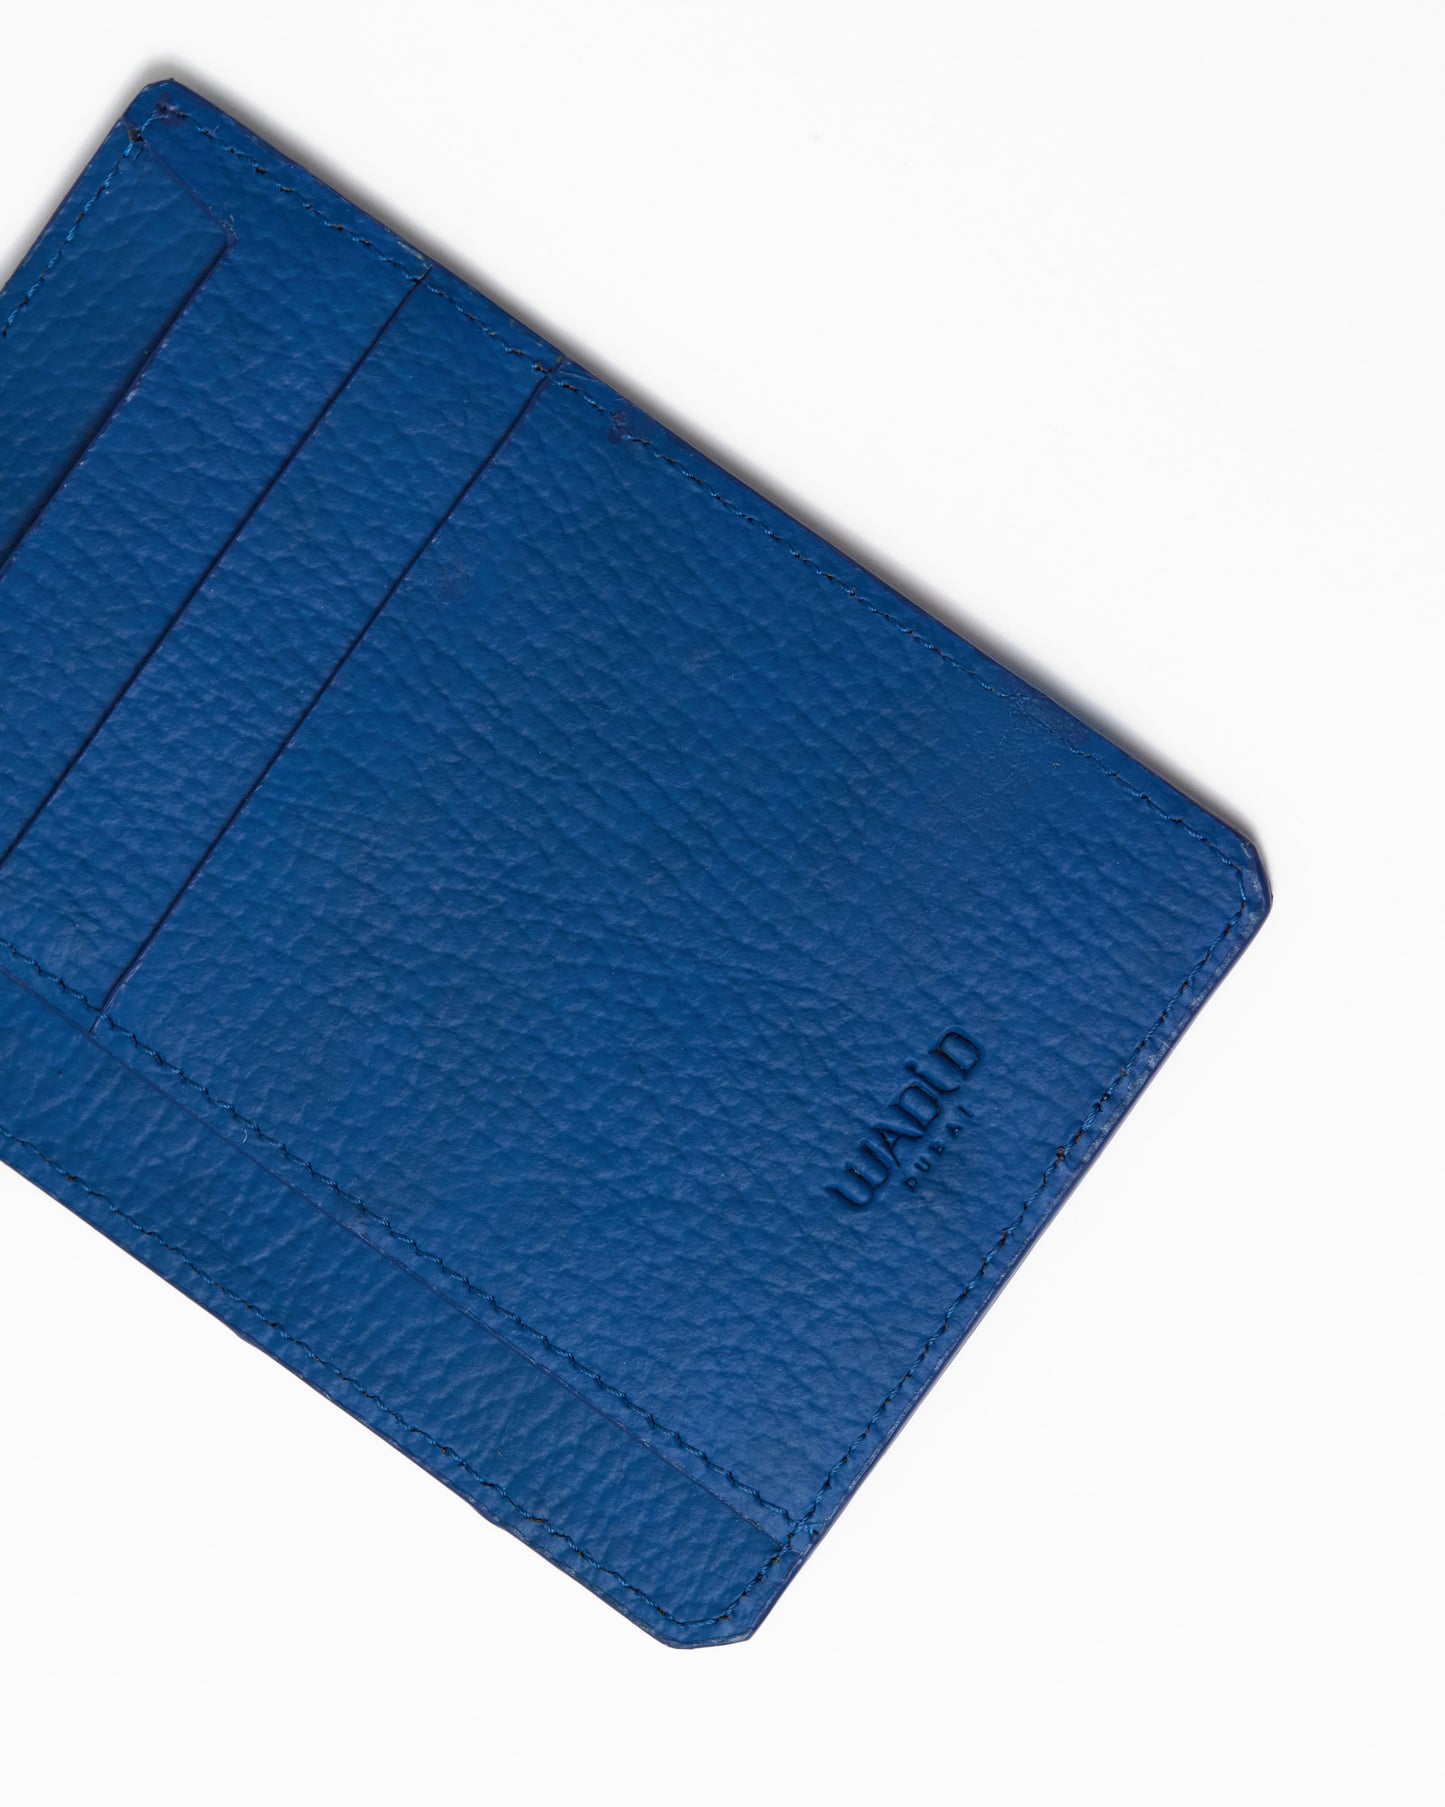 Blue Hamba cardholder